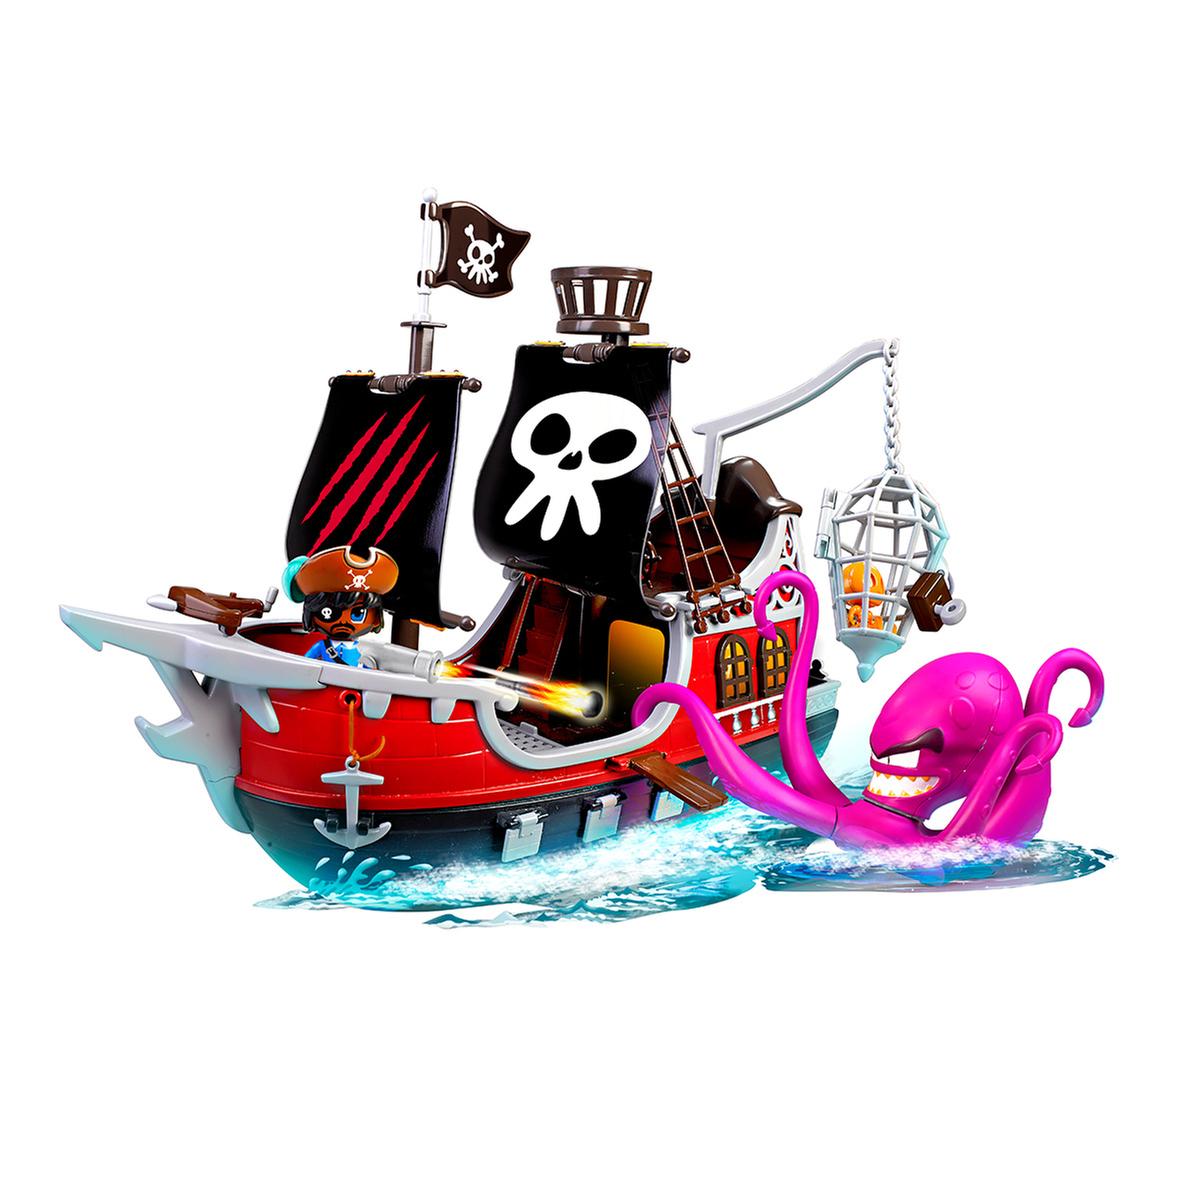 Basura transferencia de dinero No complicado Pinypon Action - Barco Pirata | Pinypon Action | Toys"R"Us España